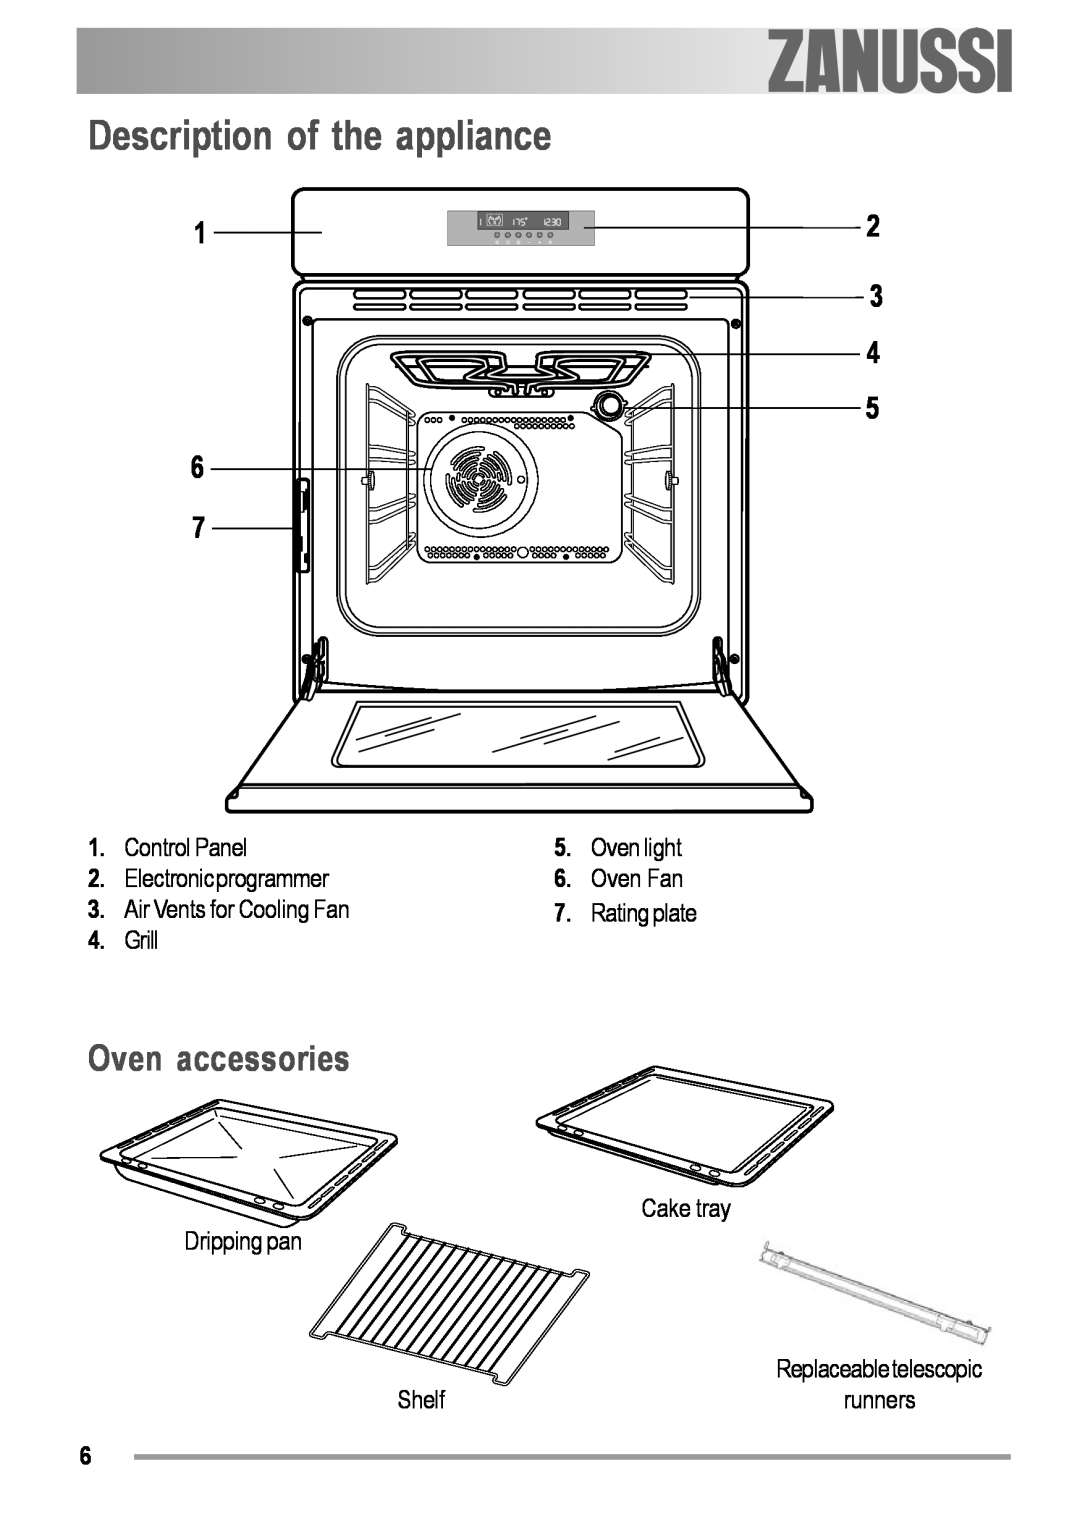 Zanussi ZOB 594 manual Description of the appliance, Oven accessories 